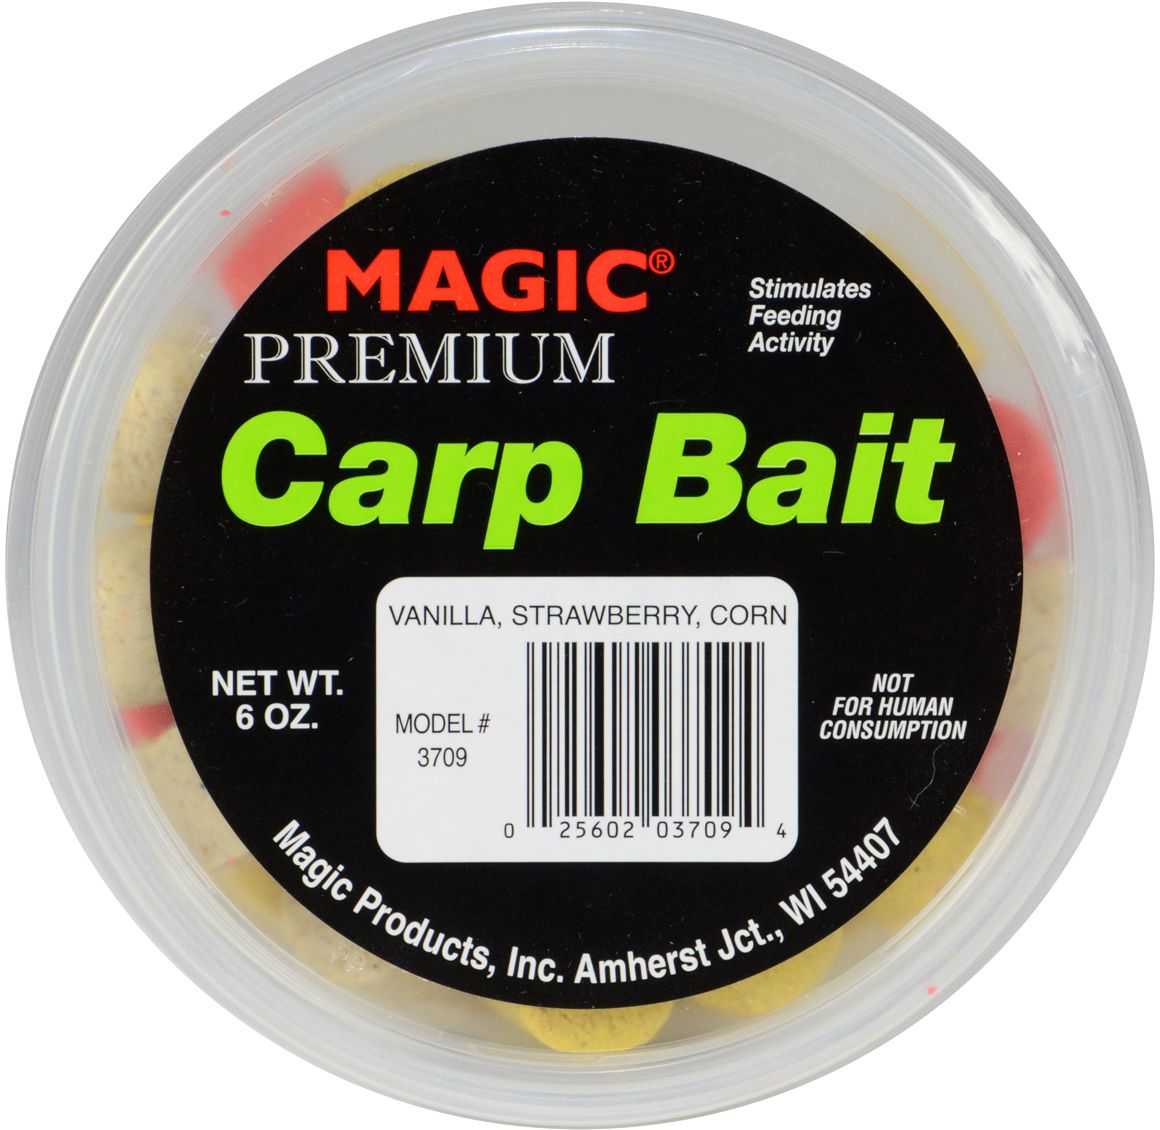 Dick's Sporting Goods Magic Premium Carp Bait